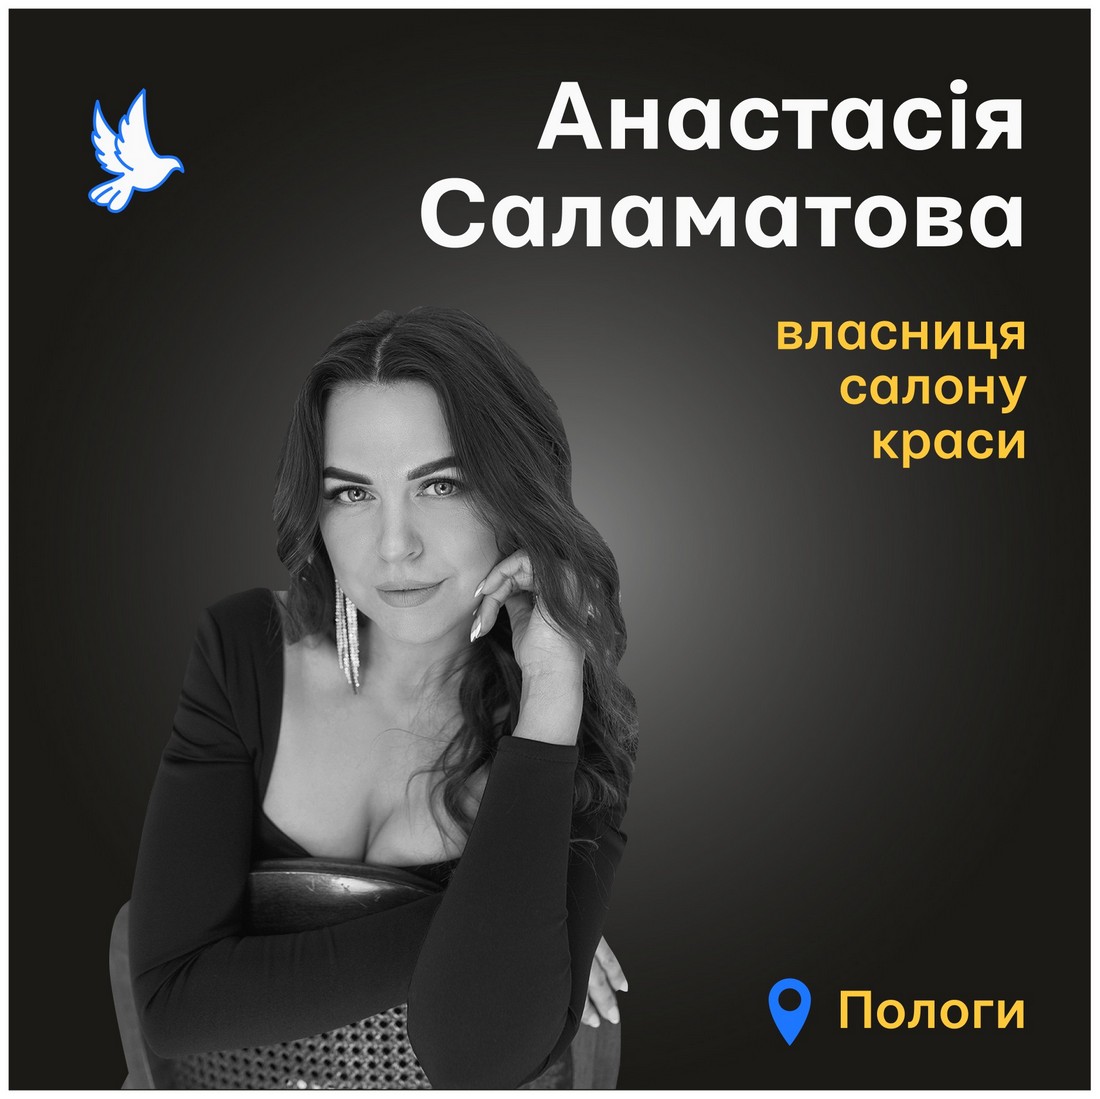 Меморіал: вбиті росією. Анастасія Саламатова, 37 років, березень, Пологи